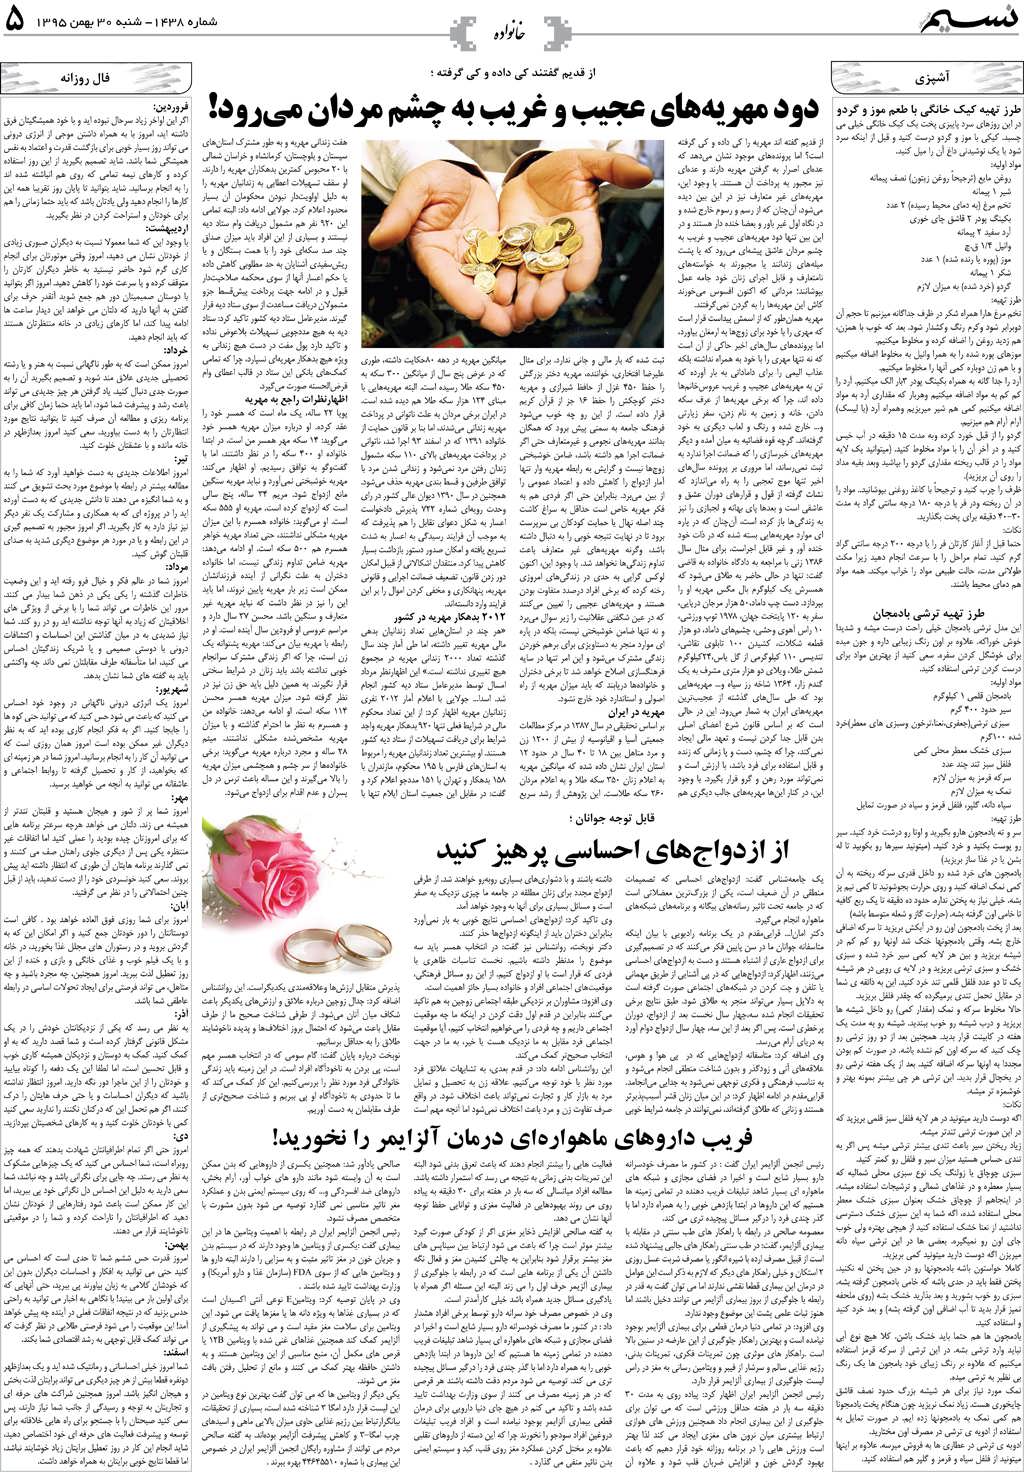 صفحه خانواده روزنامه نسیم شماره 1438